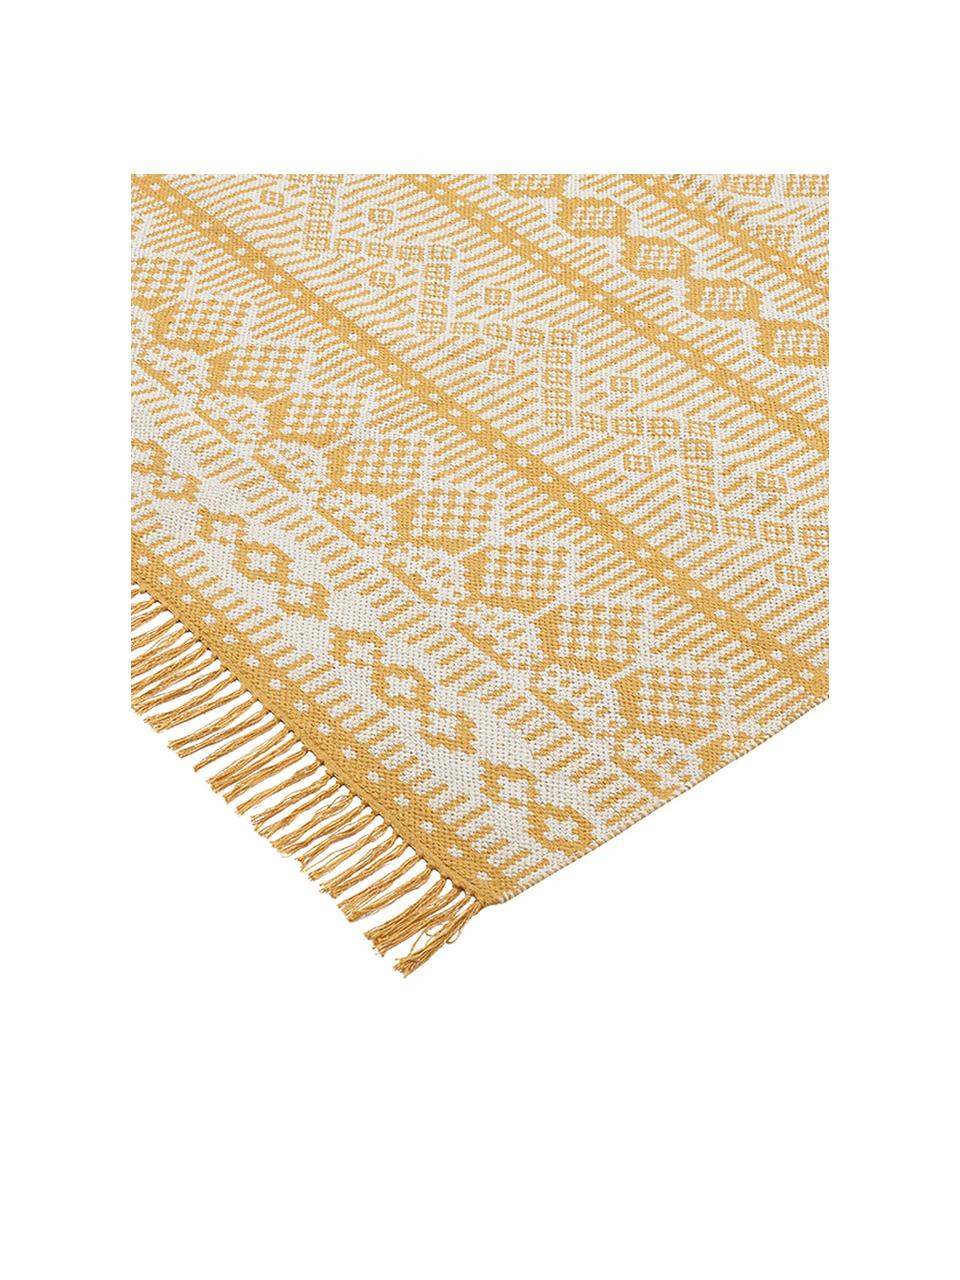 Ethno Teppich Panama aus recycelter Baumwolle, 100% Recycelte Baumwolle, Creme, Senfgelb, B 70 x L 140 cm (Größe XS)